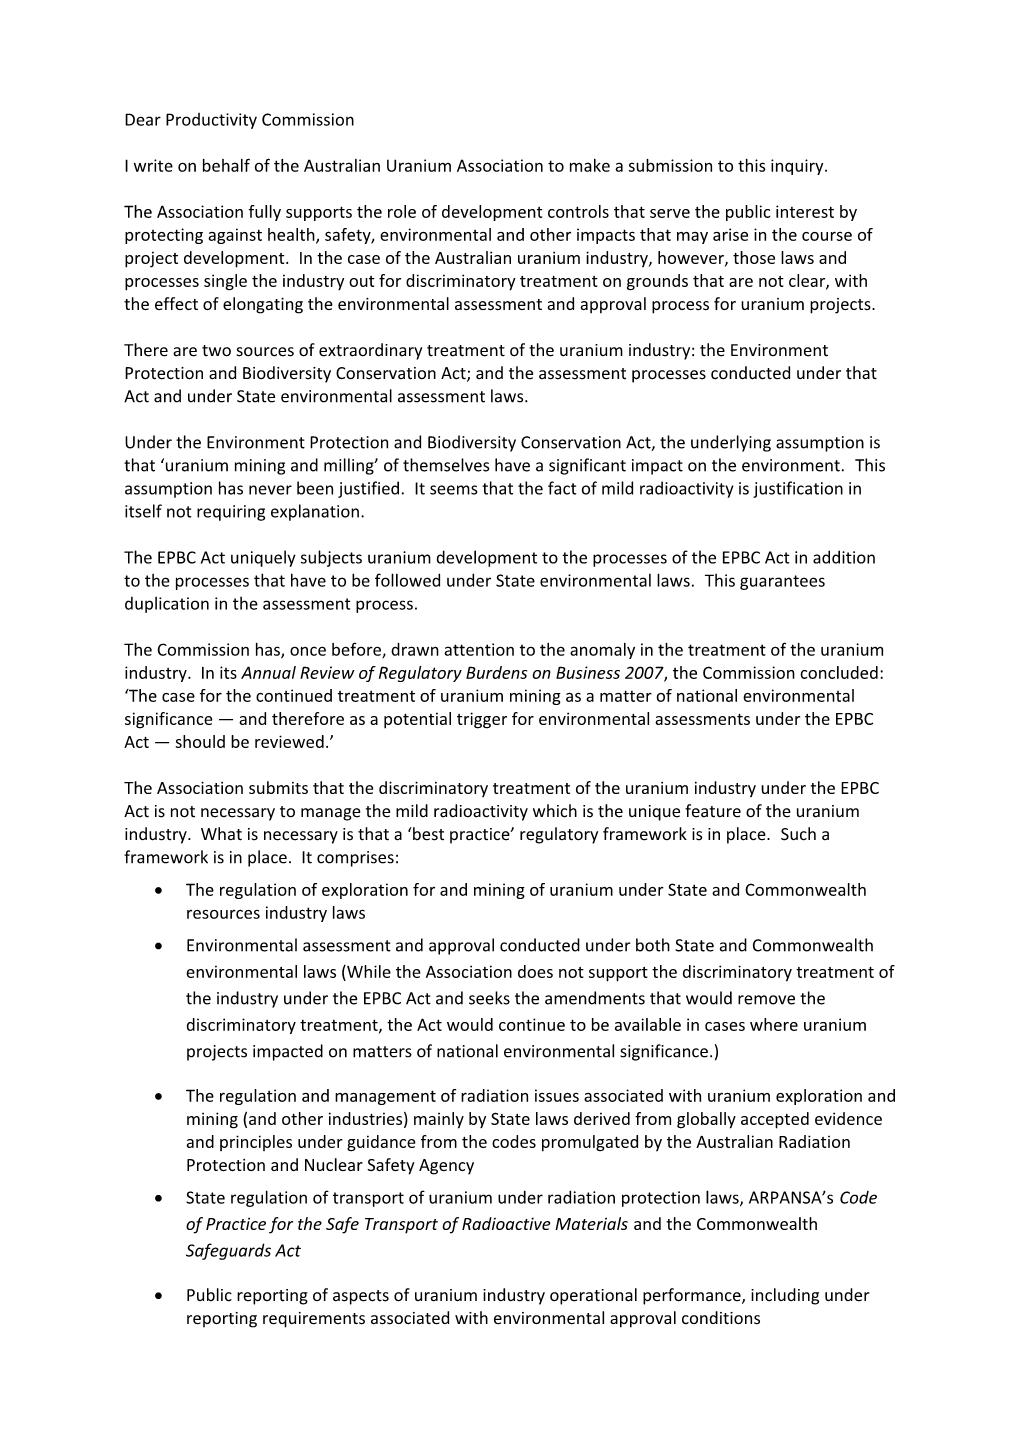 Submission 34 - Australian Uranium Association - Major Project Development Assessment Processes